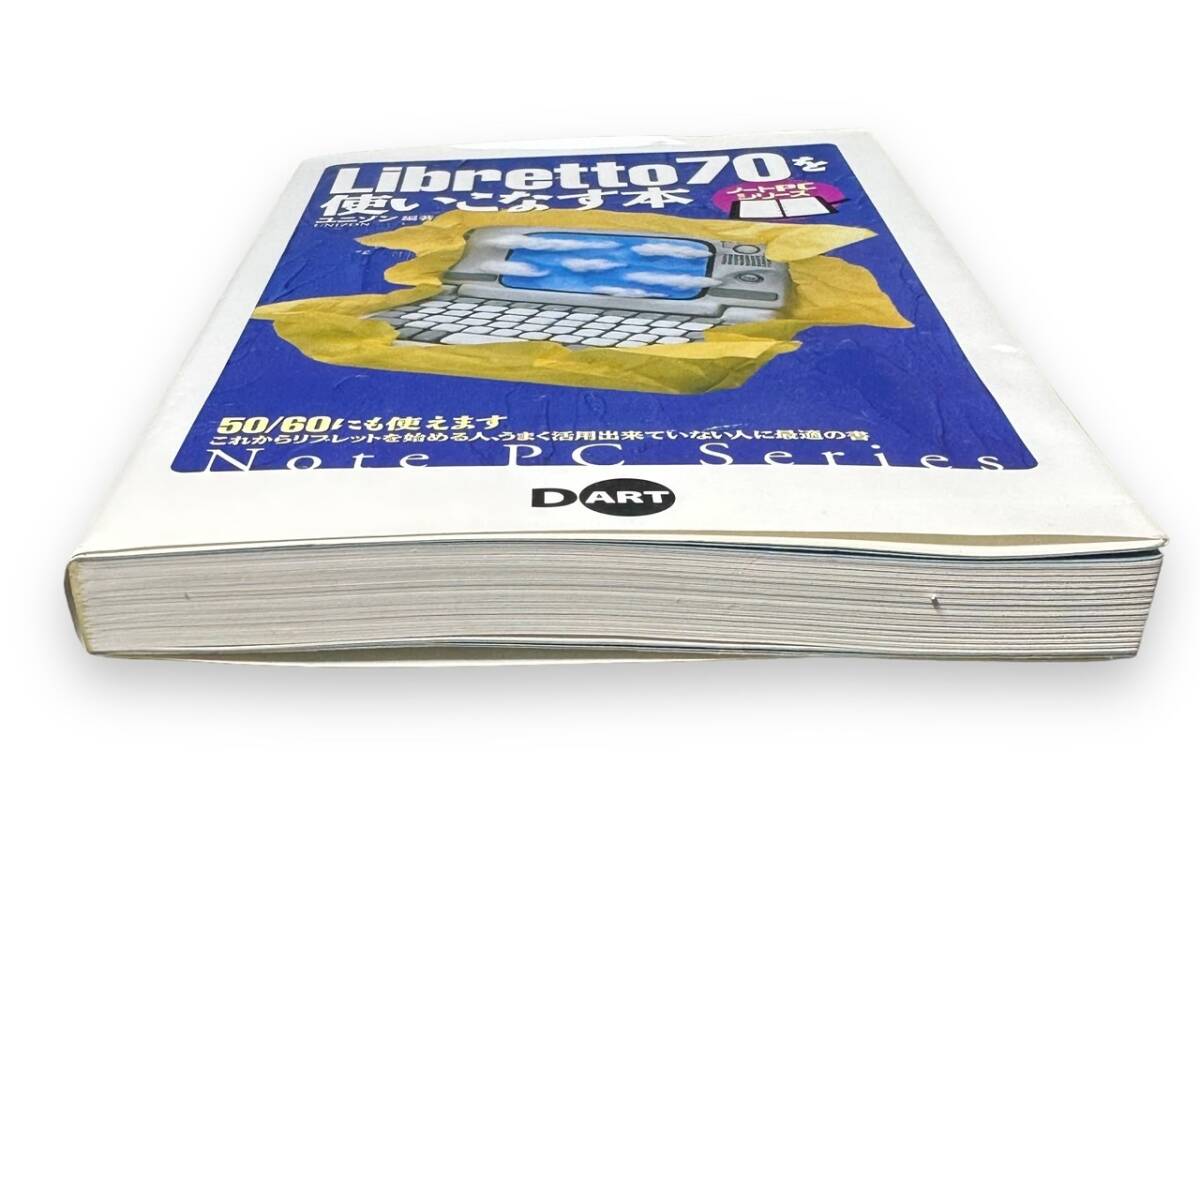 E-024[ publication * the first version book@][Libretto70. using . eggplant book@( Note PC series )] Uni zon( editing ) 1998 year the first version book